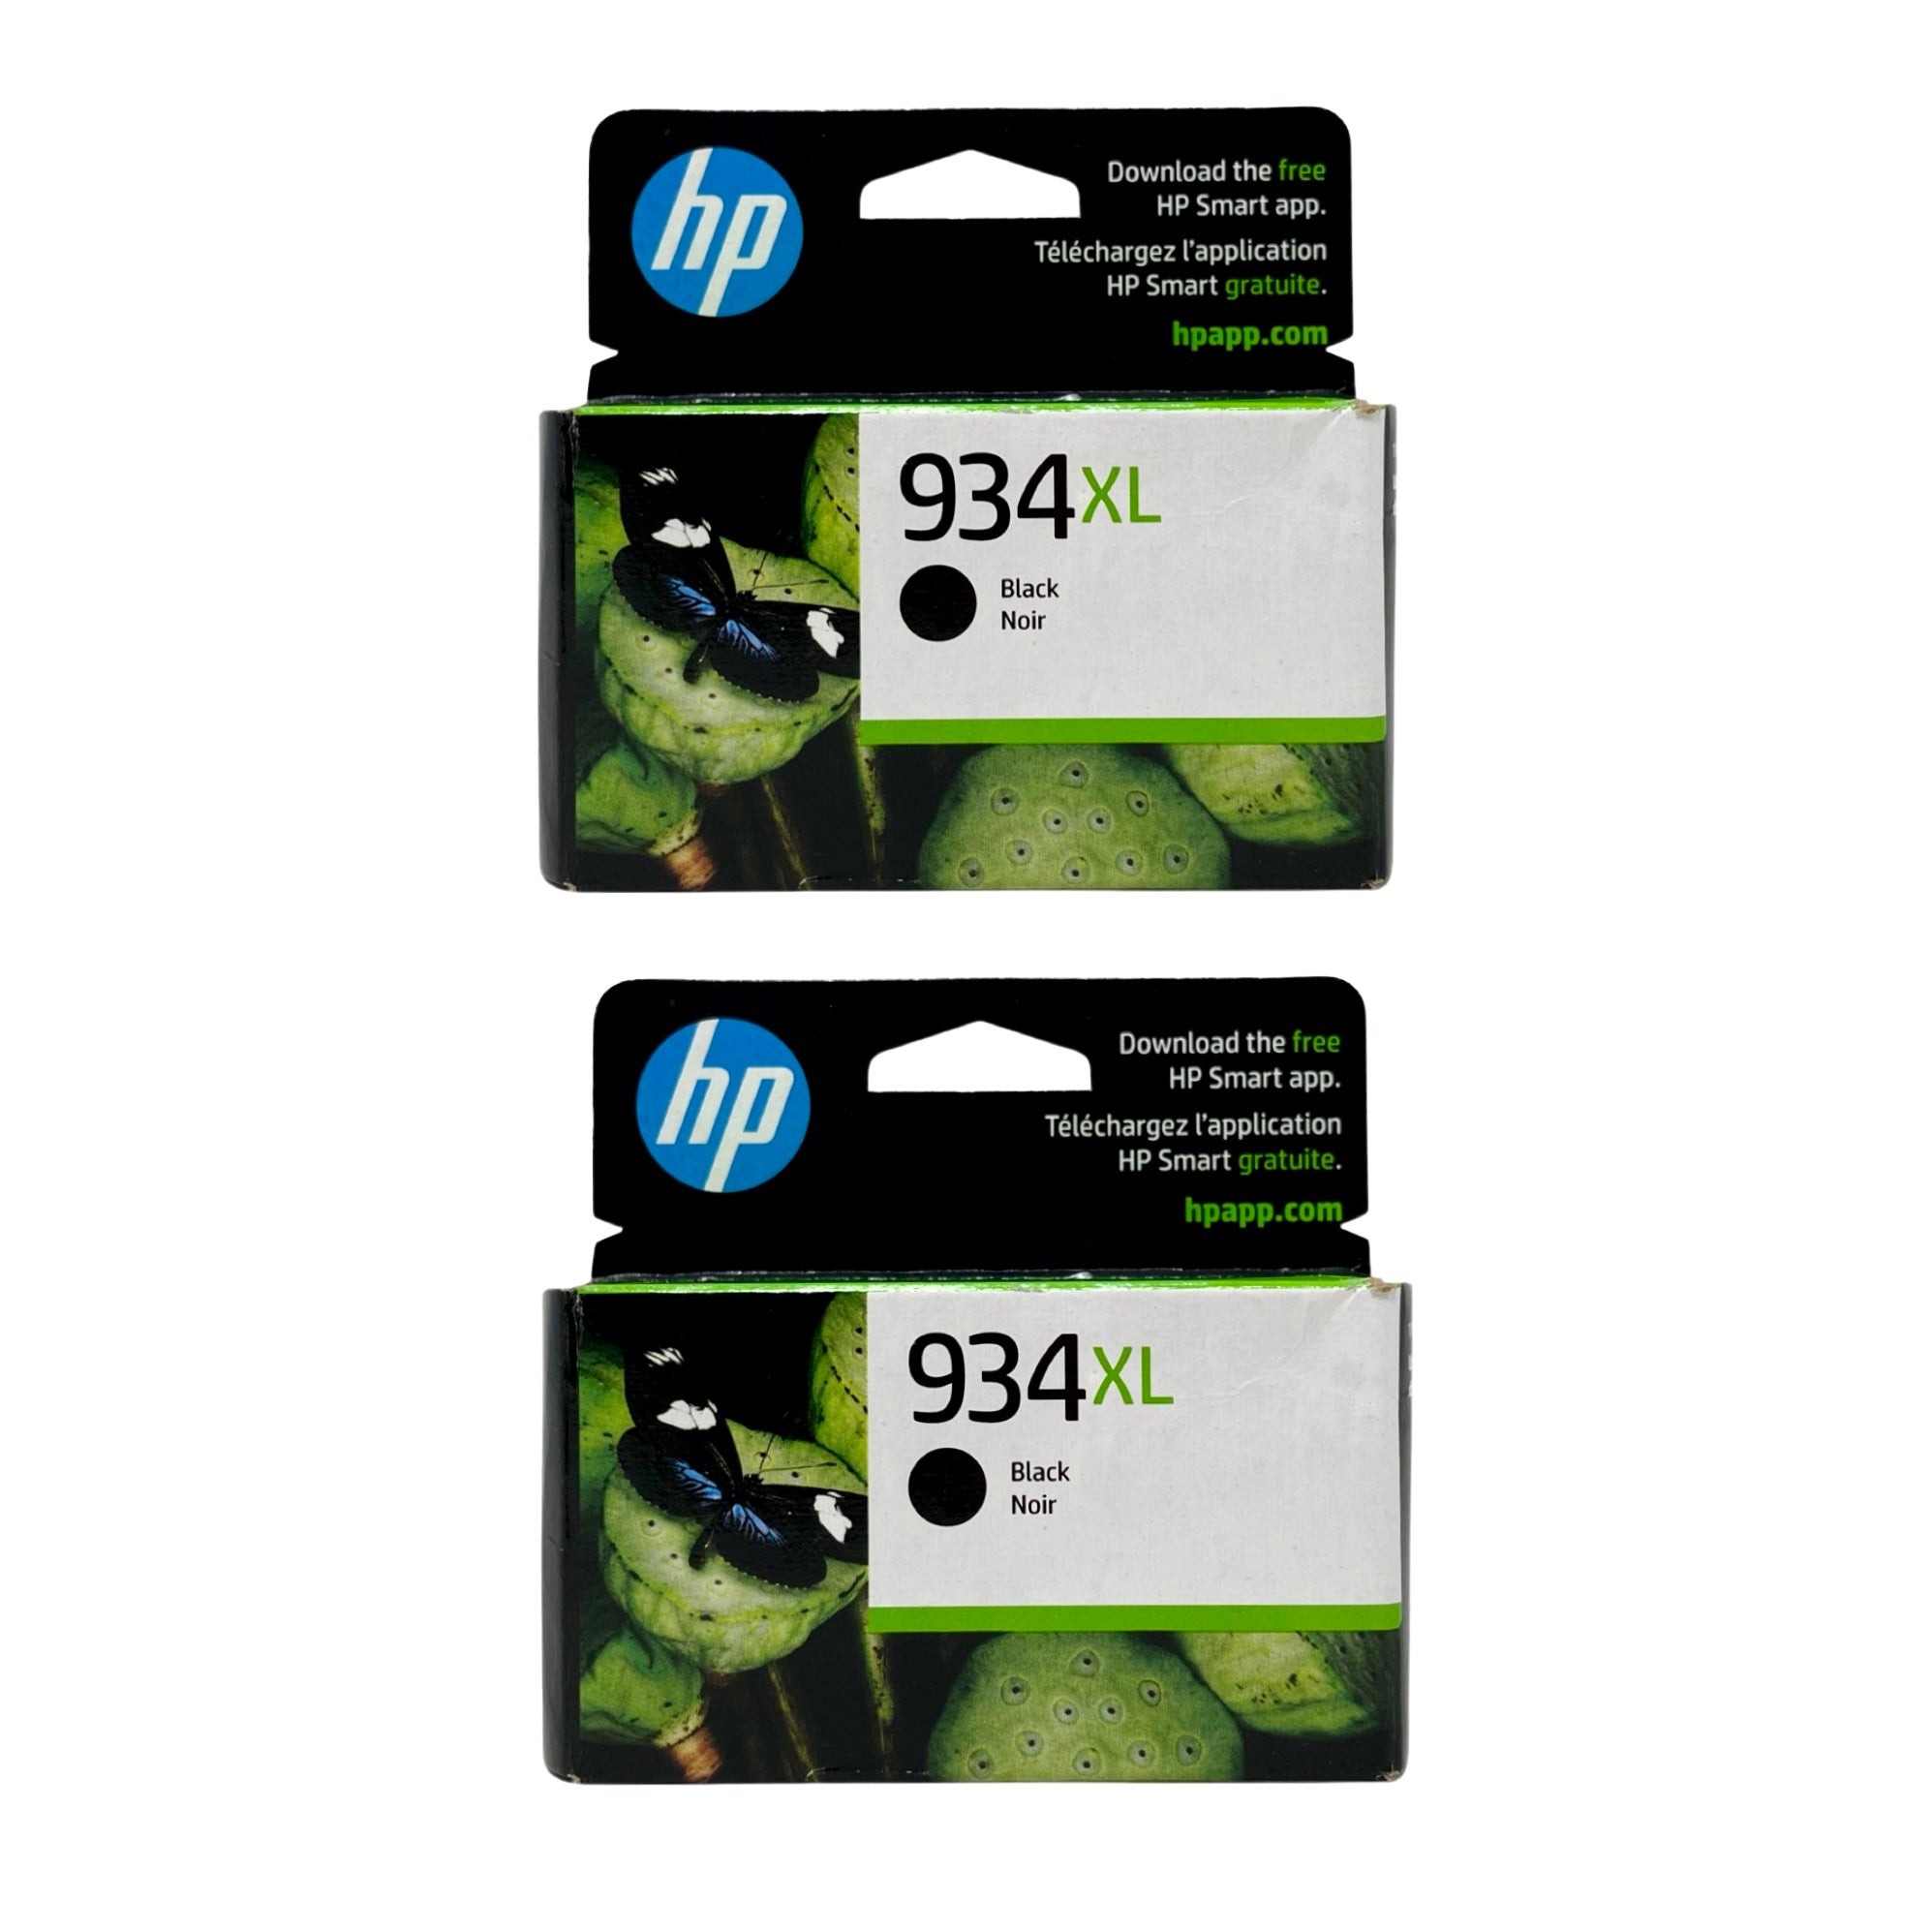 HP 934XL High Yield Ink 2 Pack - Black - Original HP Ink Cartridges